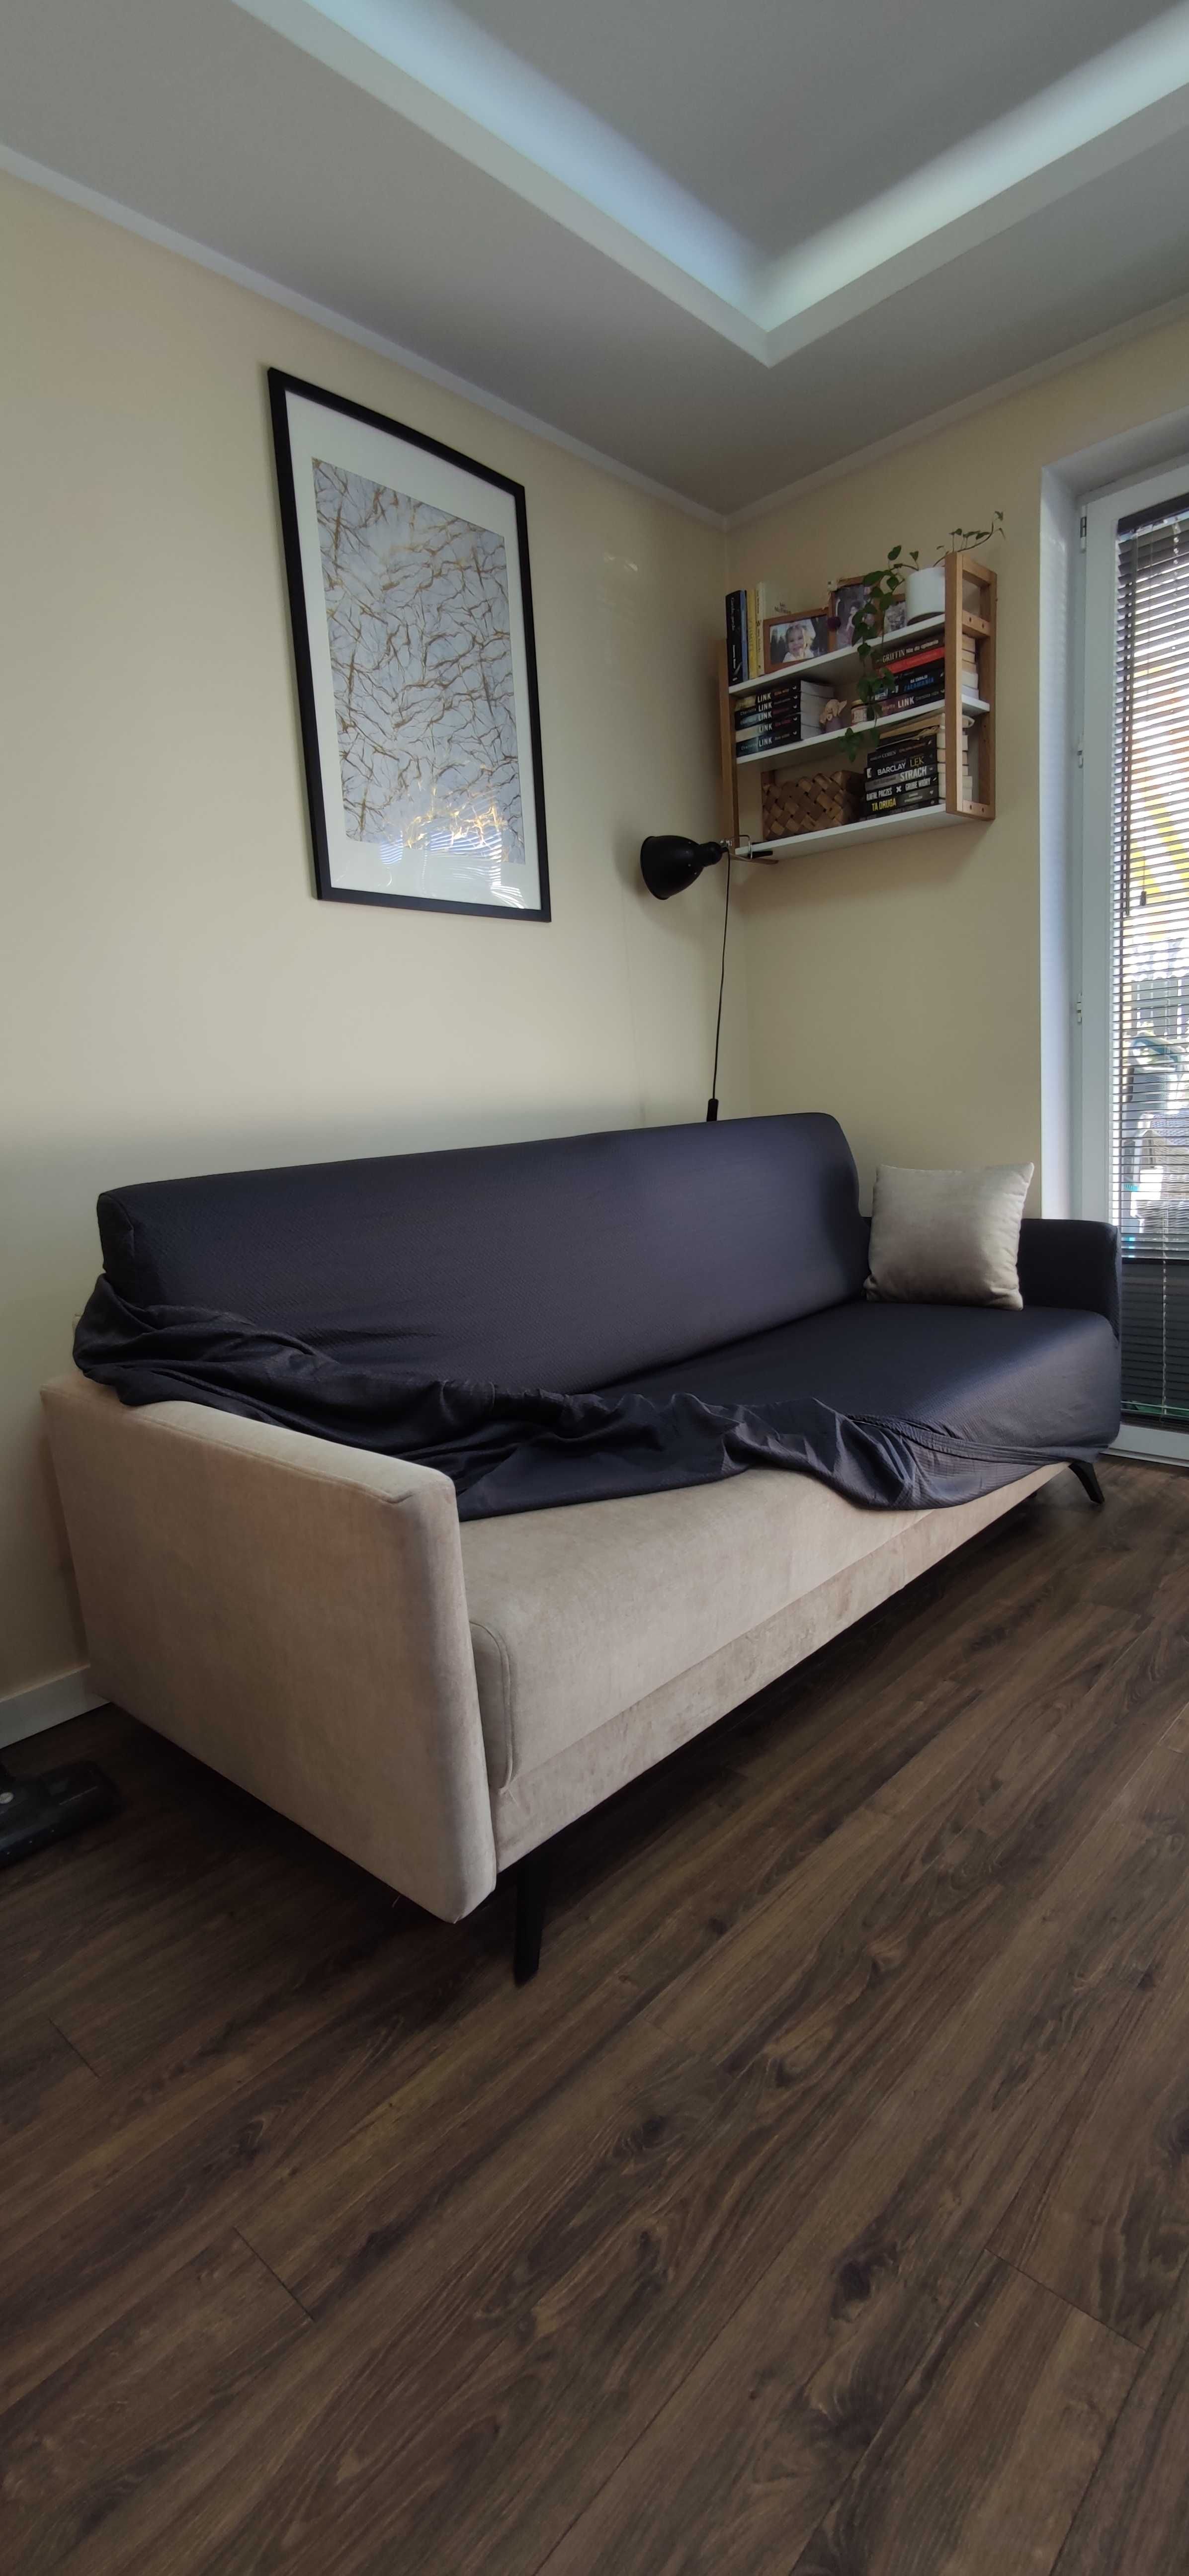 Gruba narzuta na sofę rozciągliwy pokrowiec na kanapę 3 osobową